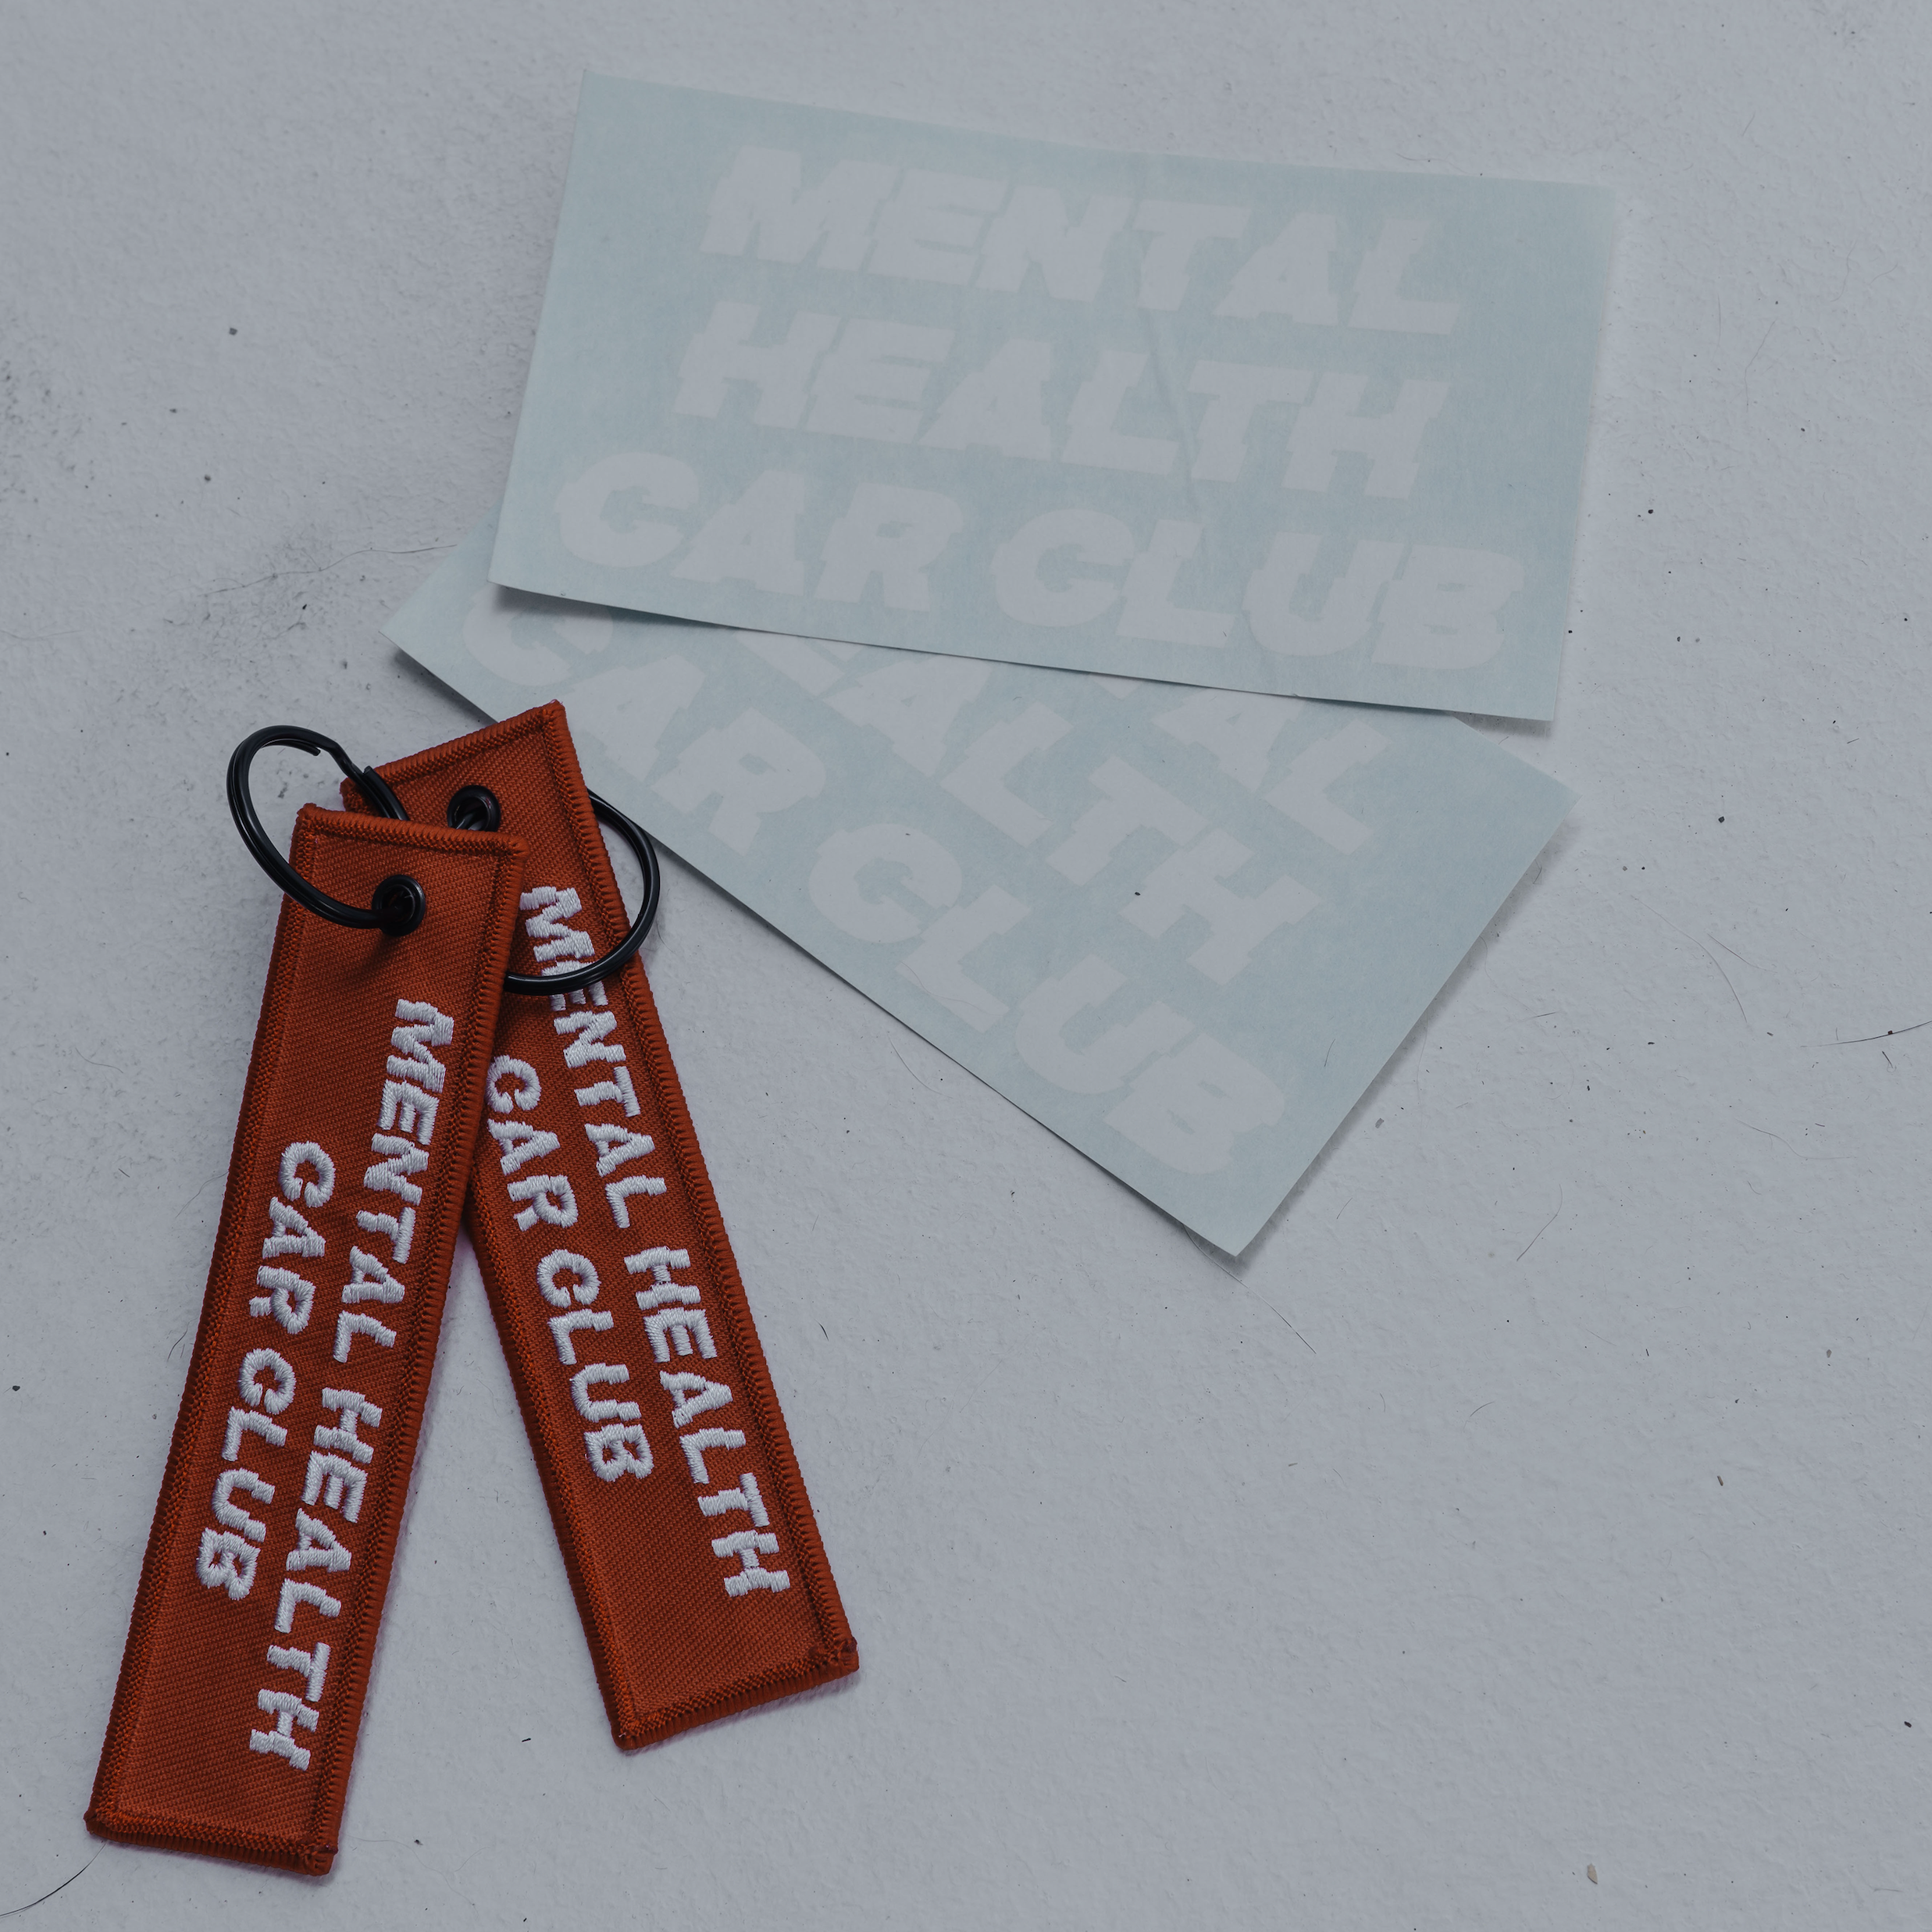 Die Cut Sticker - White Mental Health Car Club